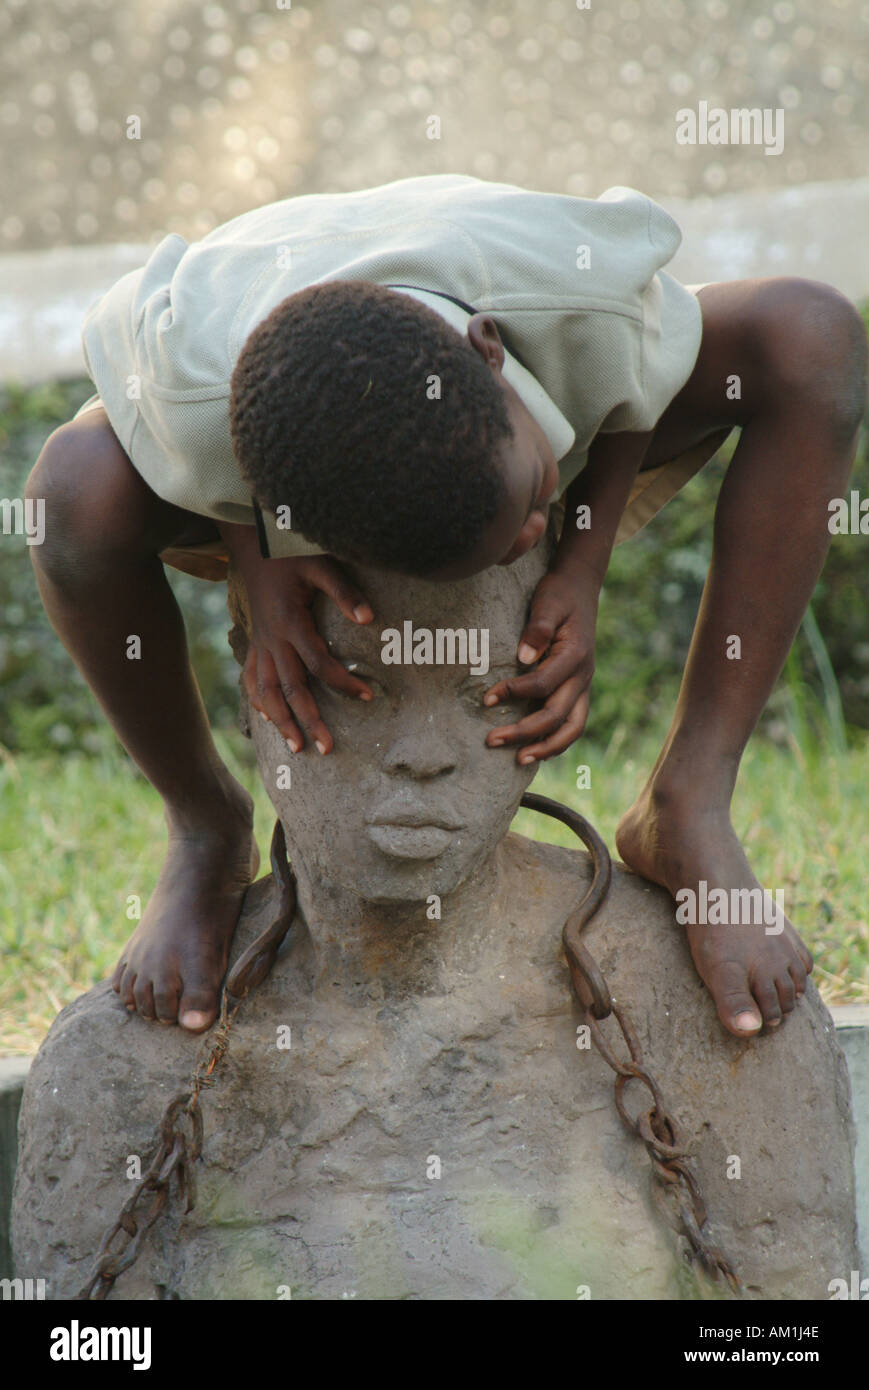 Les enfants jouent sur l'esclavage monument construit sur le site de l'ancien marché aux esclaves de Stone Town. Zanzibar, Tanzanie, Afrique de l'Est Banque D'Images